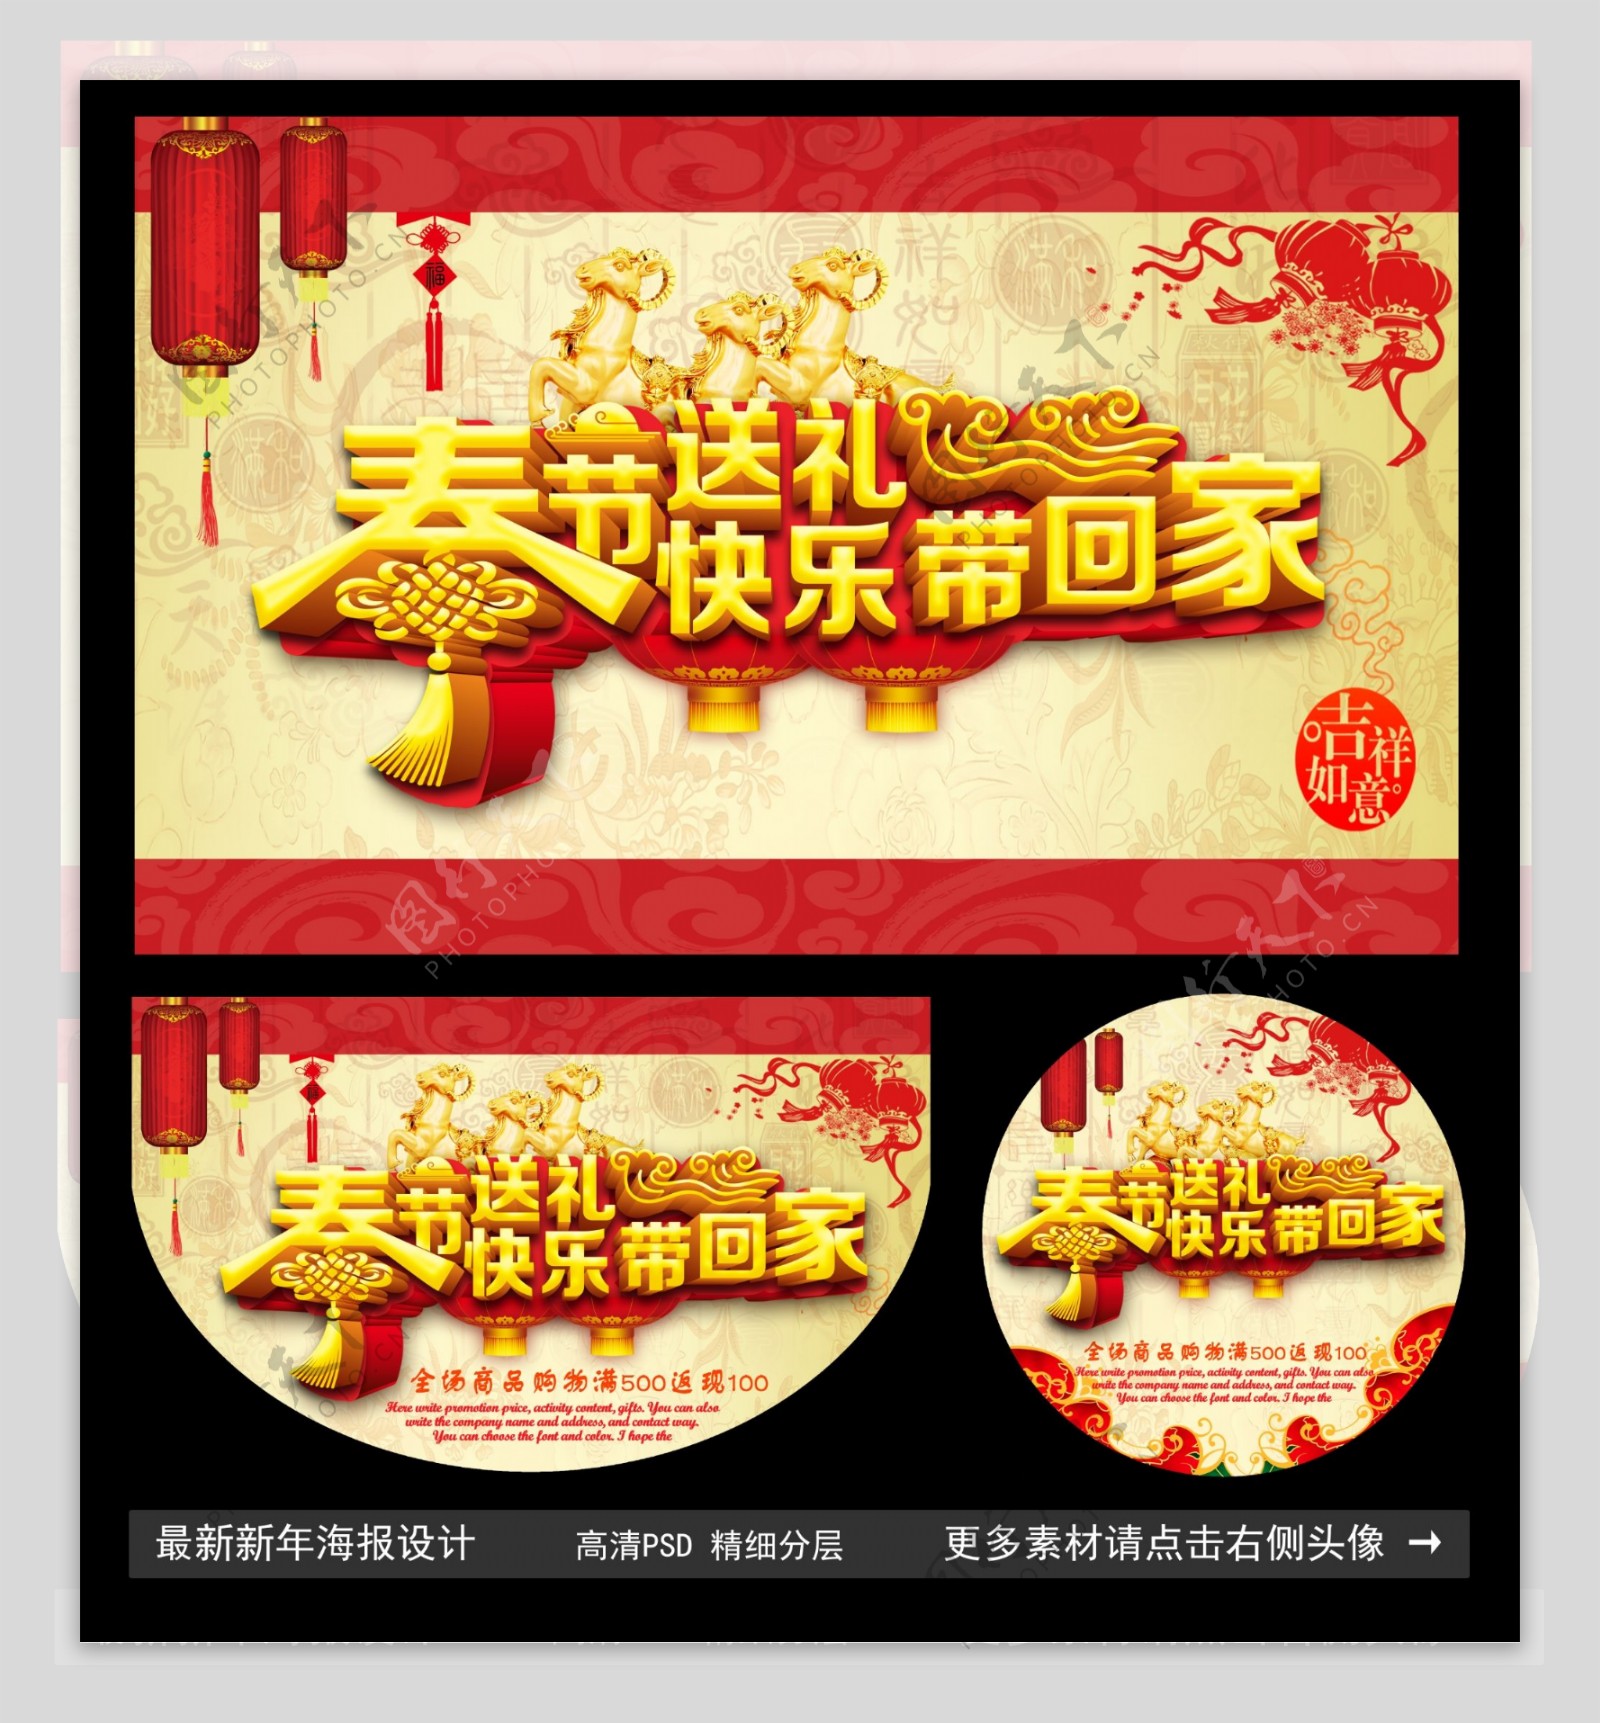 春节海报图片